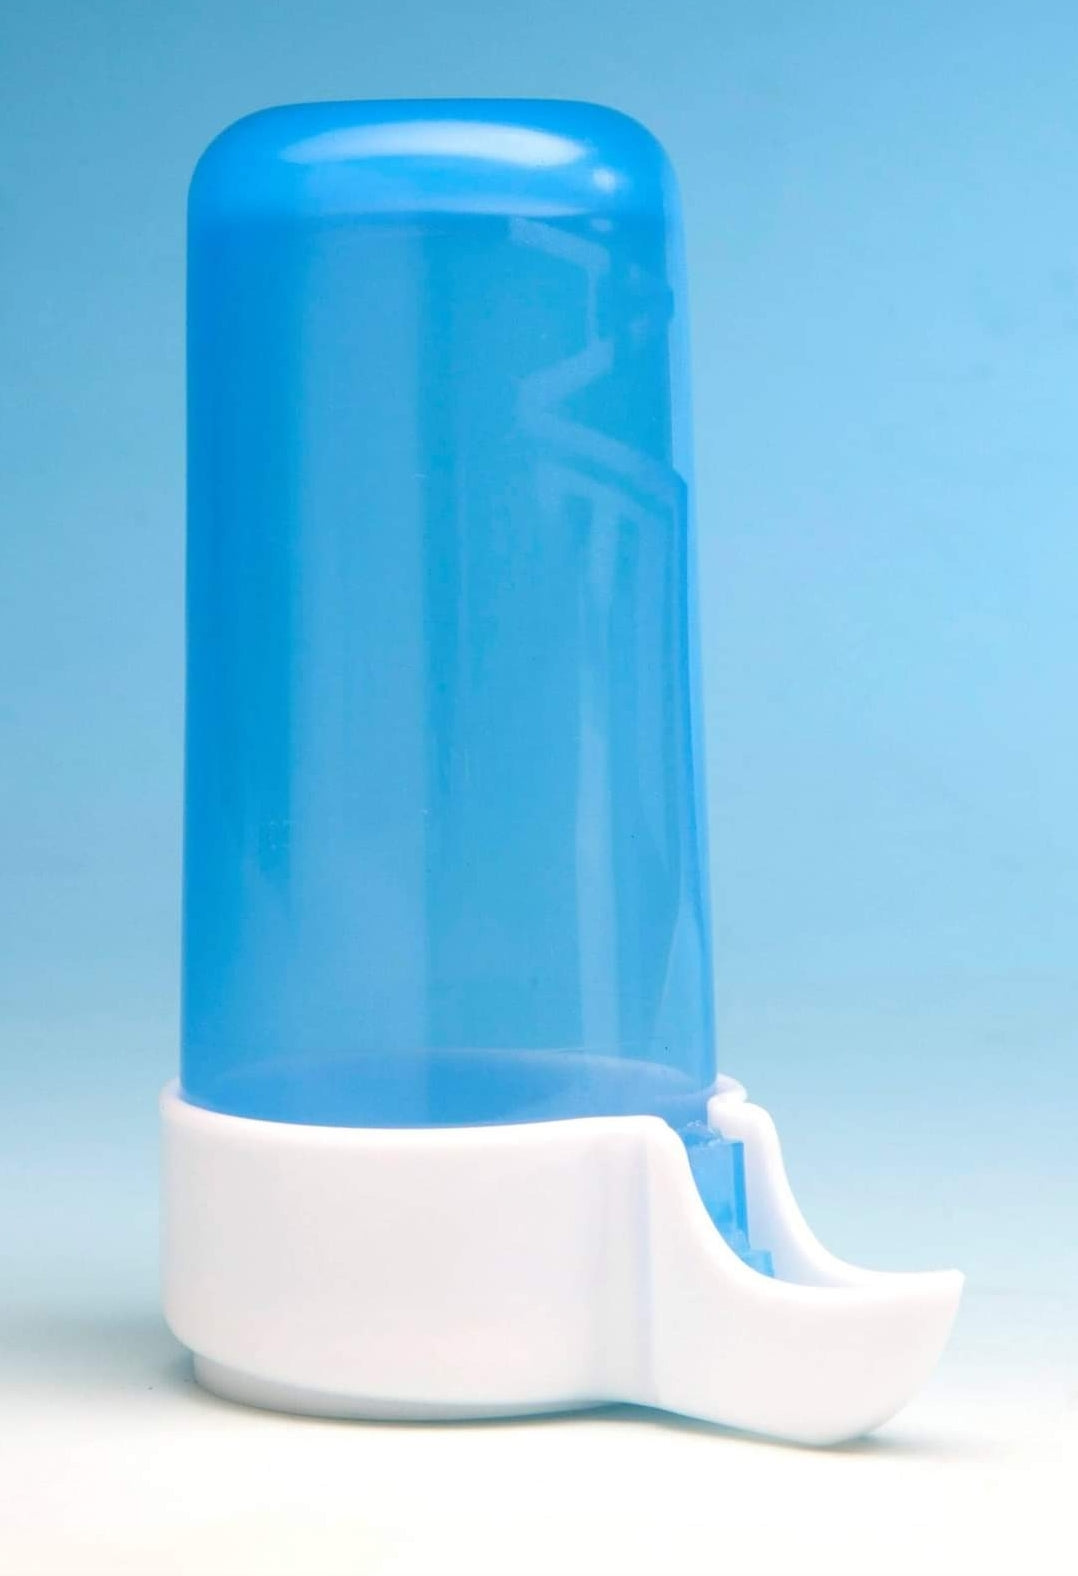 Drink fontein ( blauw ) anti-verspilling systeem 170ml